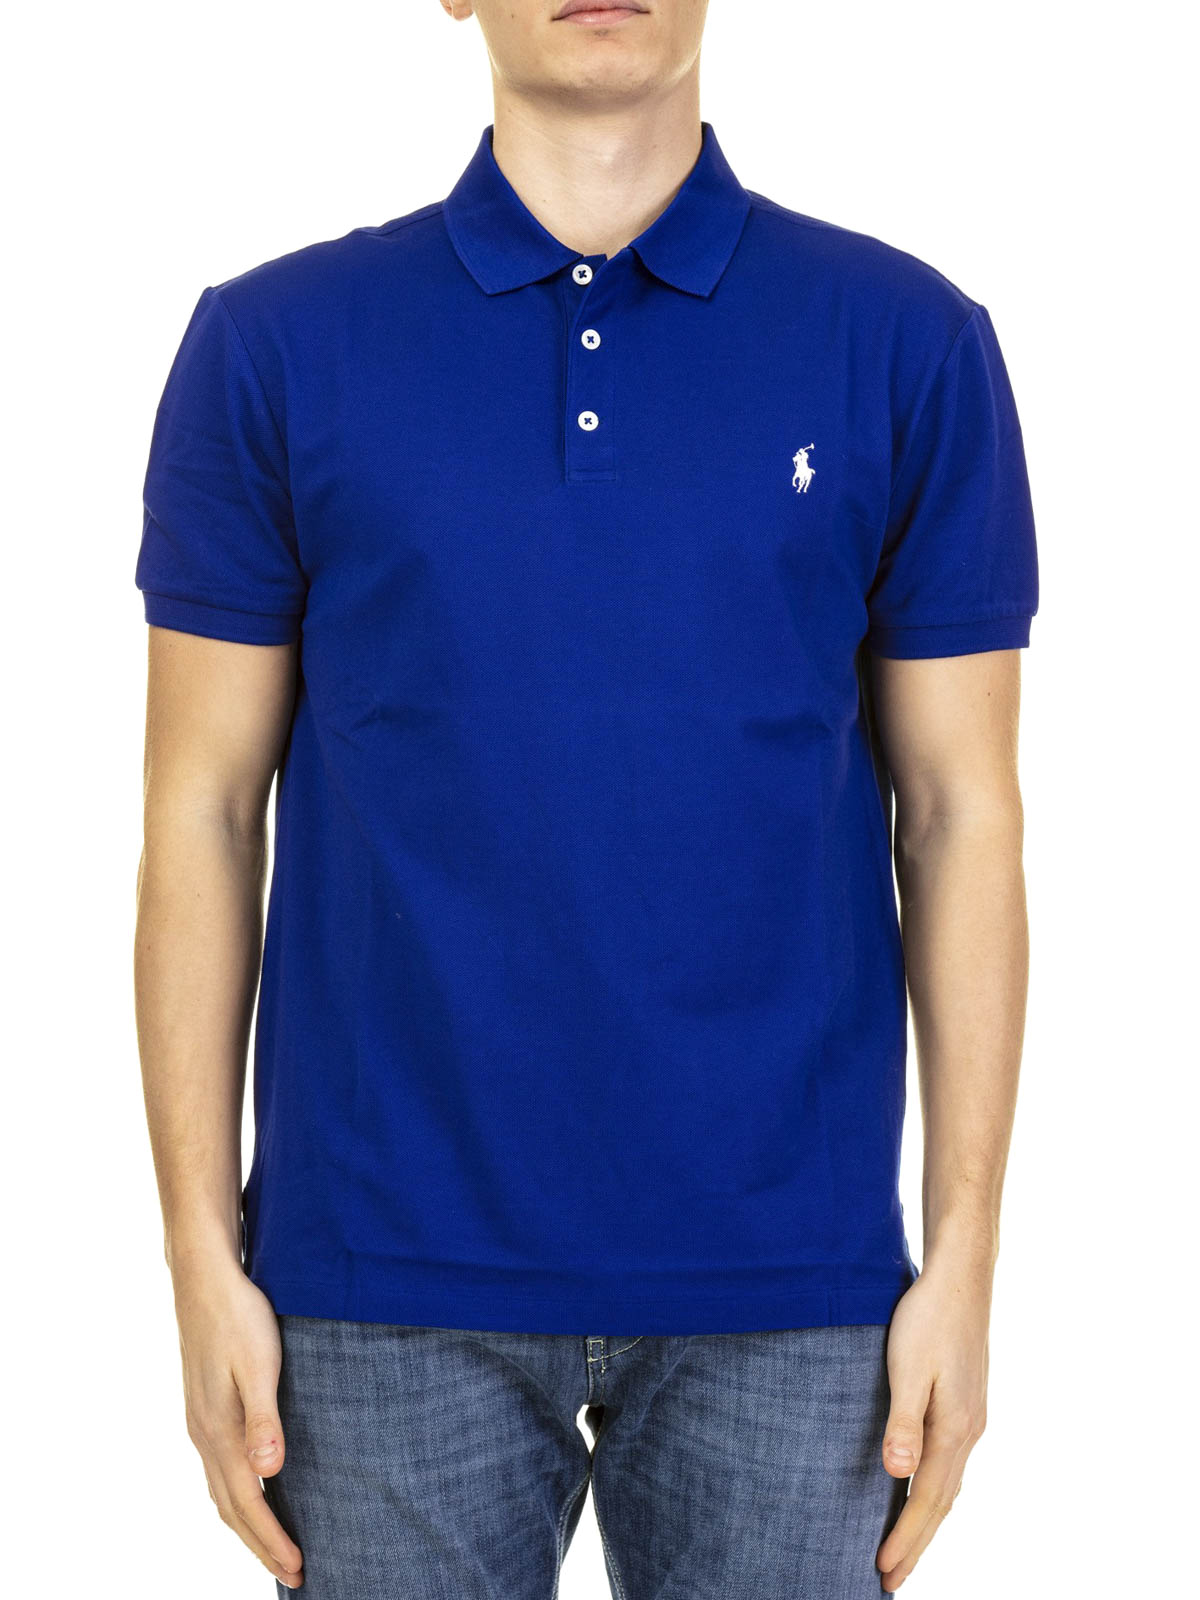 royal blue polo shirt ralph lauren